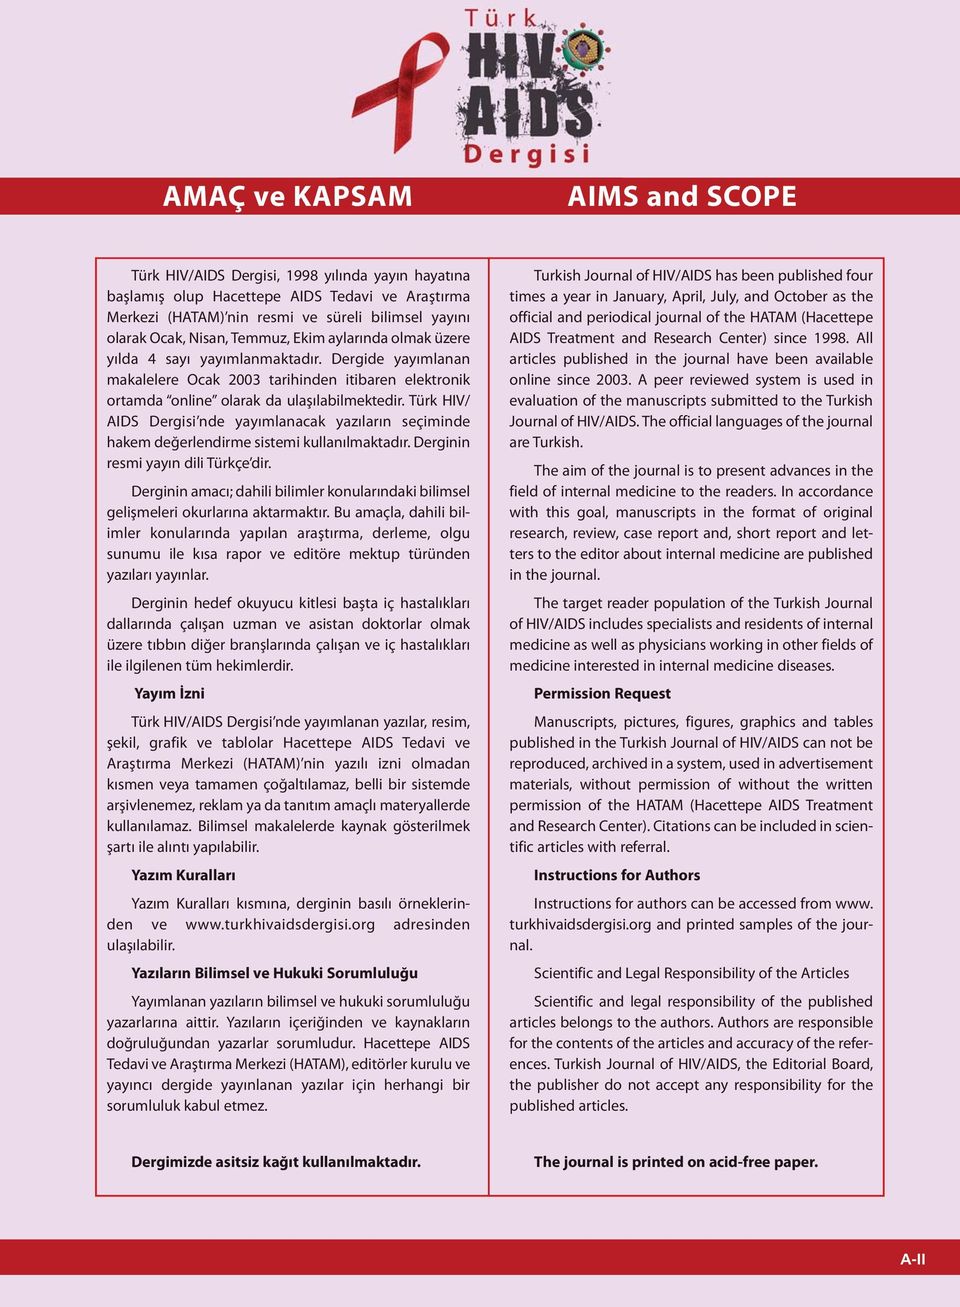 Türk HIV/ AIDS Dergisi nde yayımlanacak yazıların seçiminde hakem değerlendirme sistemi kullanılmaktadır. Derginin resmi yayın dili Türkçe dir.